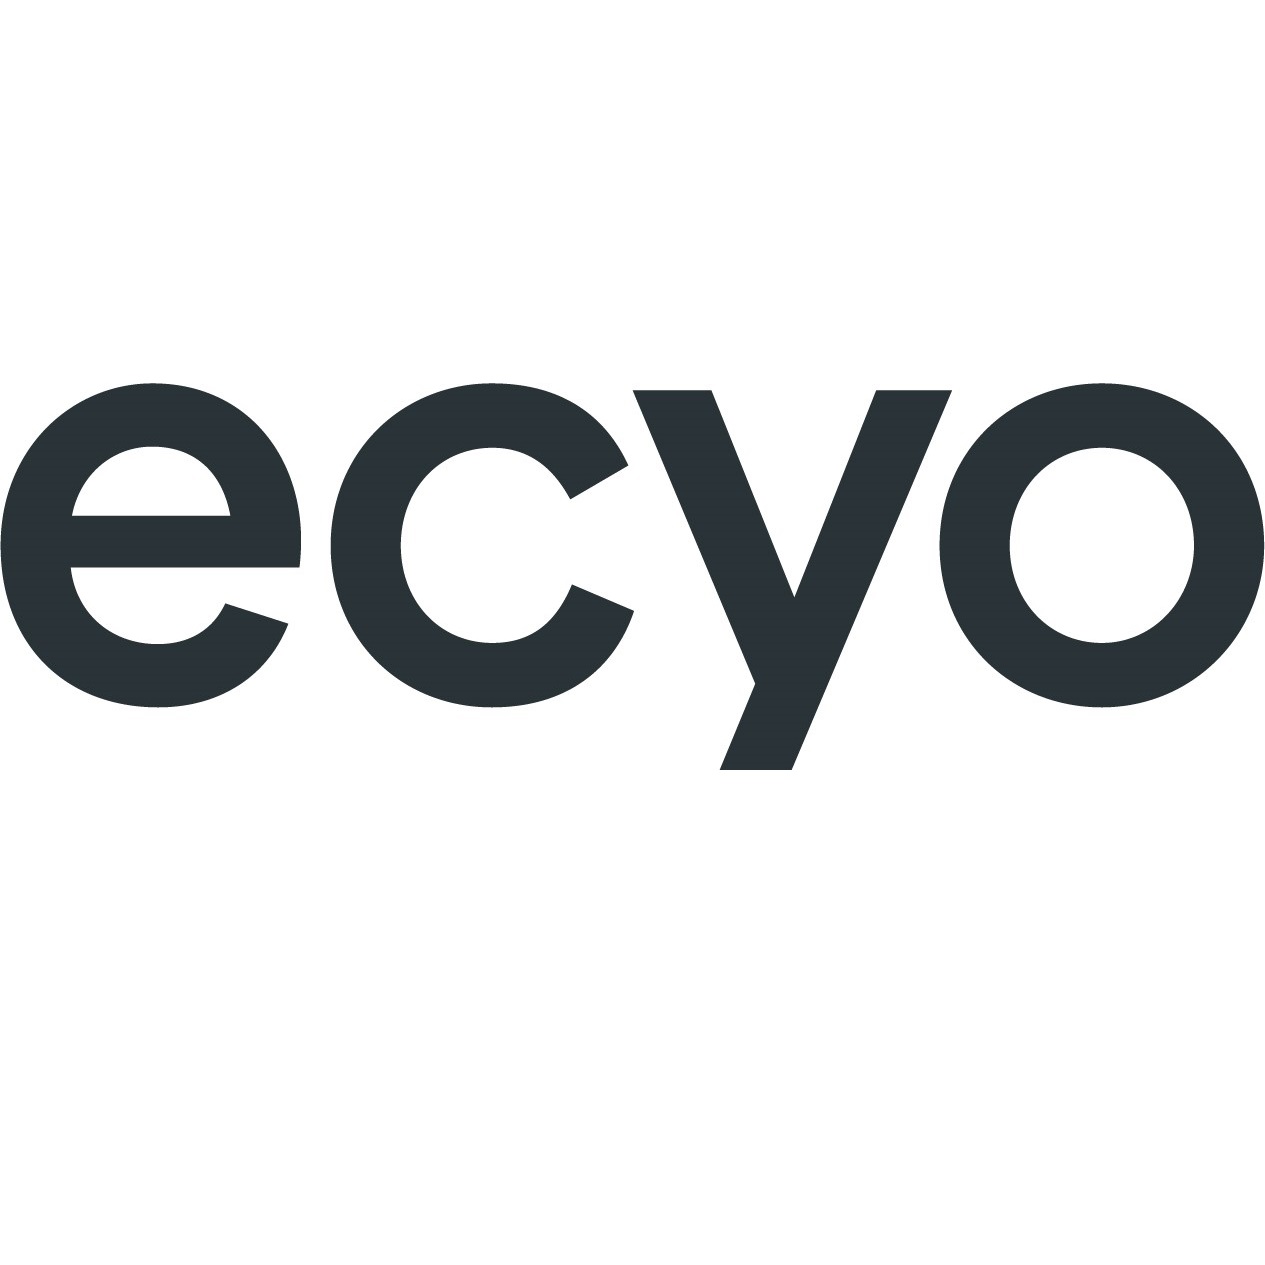 Ecyo Renovation Supplies